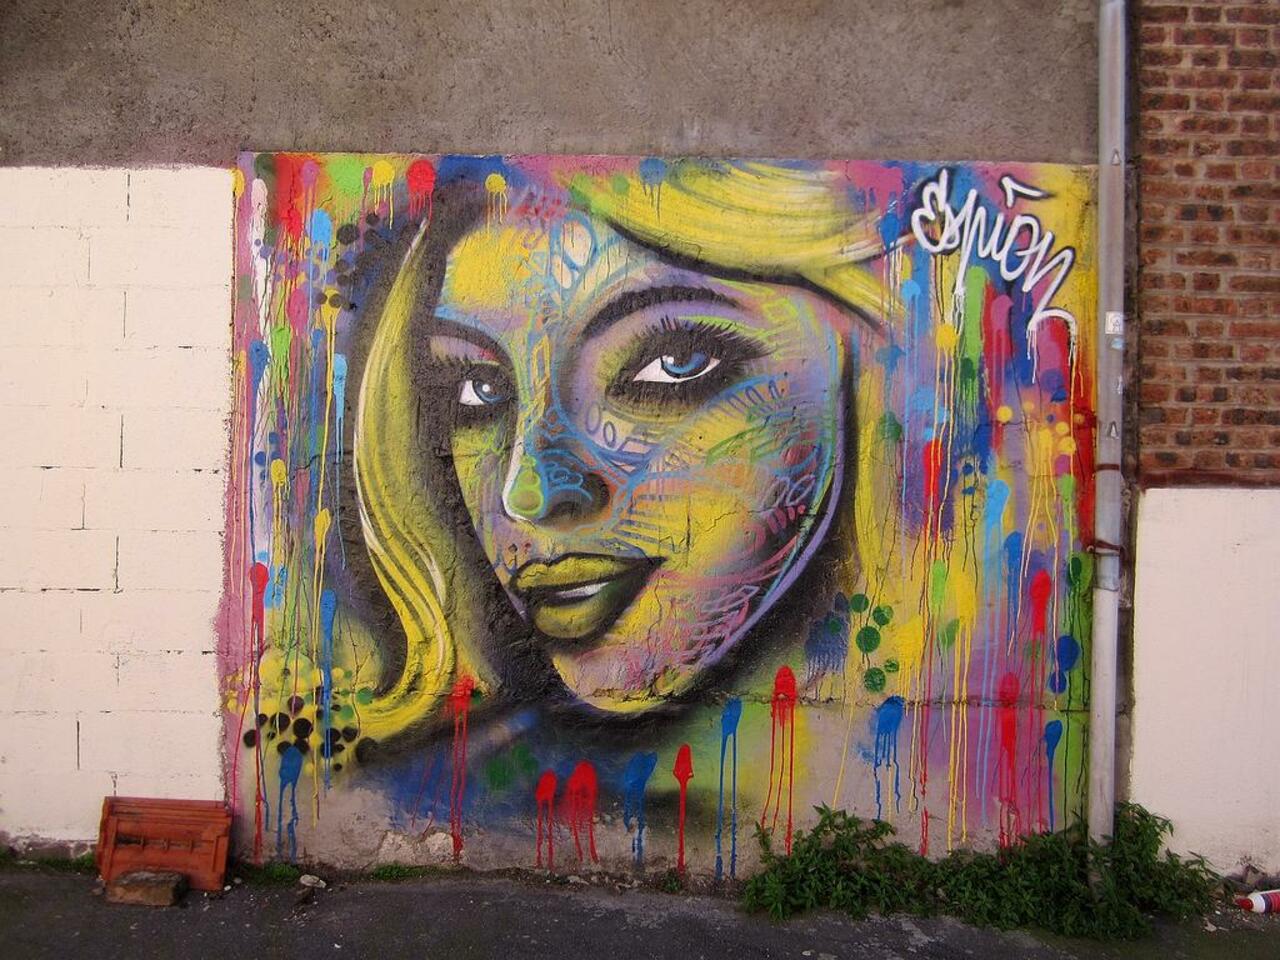 Street Art by Espion in #Montreuil http://www.urbacolors.com #art #mural #graffiti #streetart http://t.co/8cIePfsU6H